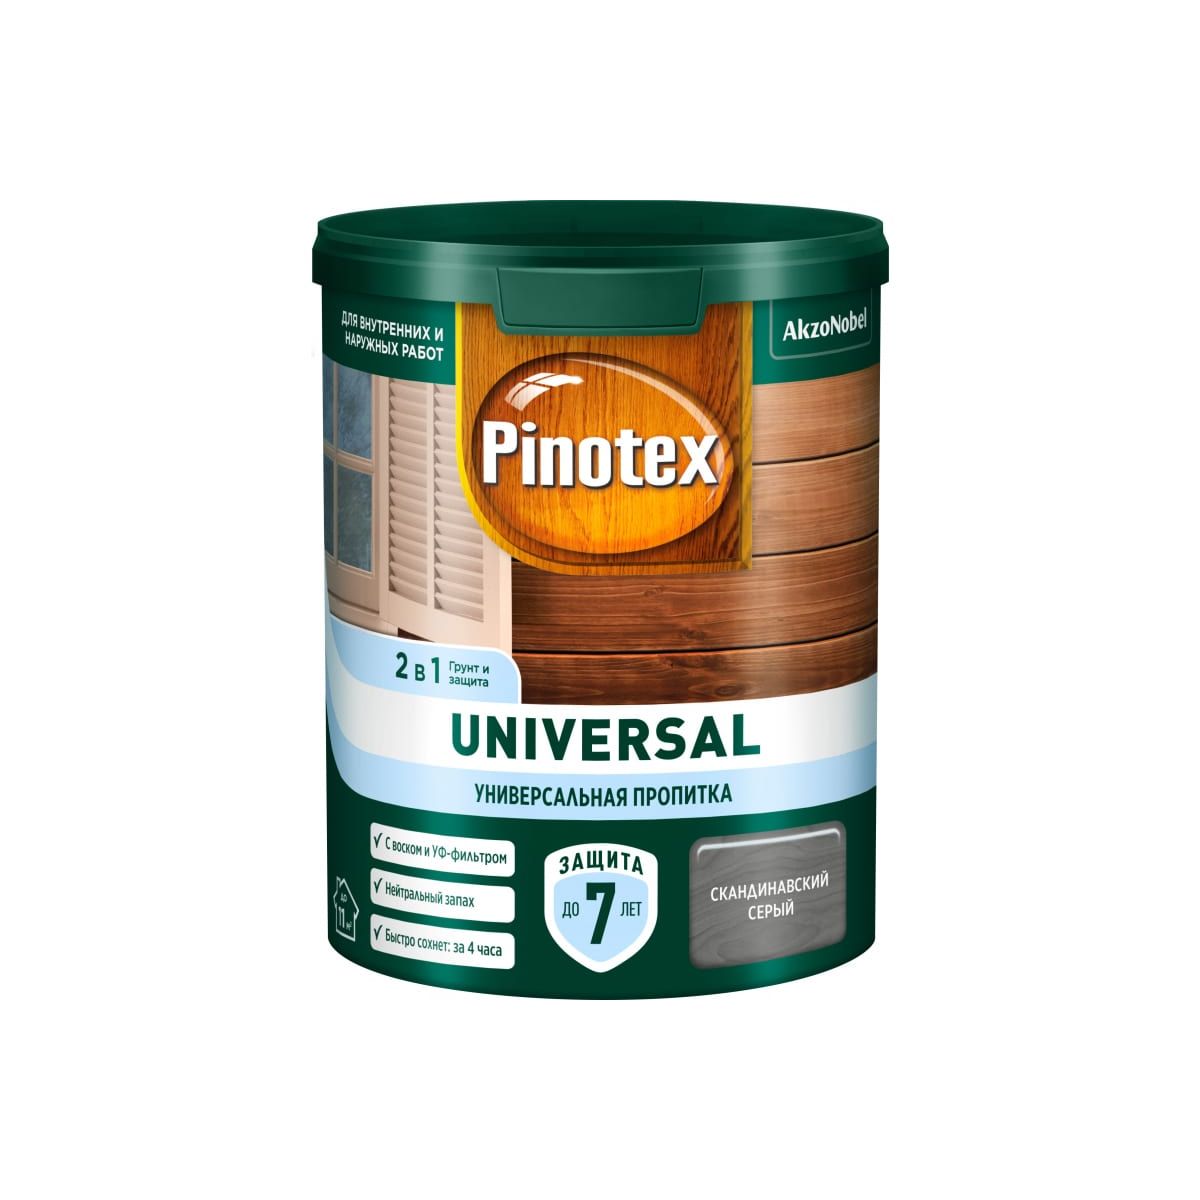 Пропитка универсальная для дерева Pinotex Universal 2 в 1, скандинавский серый, 900 мл